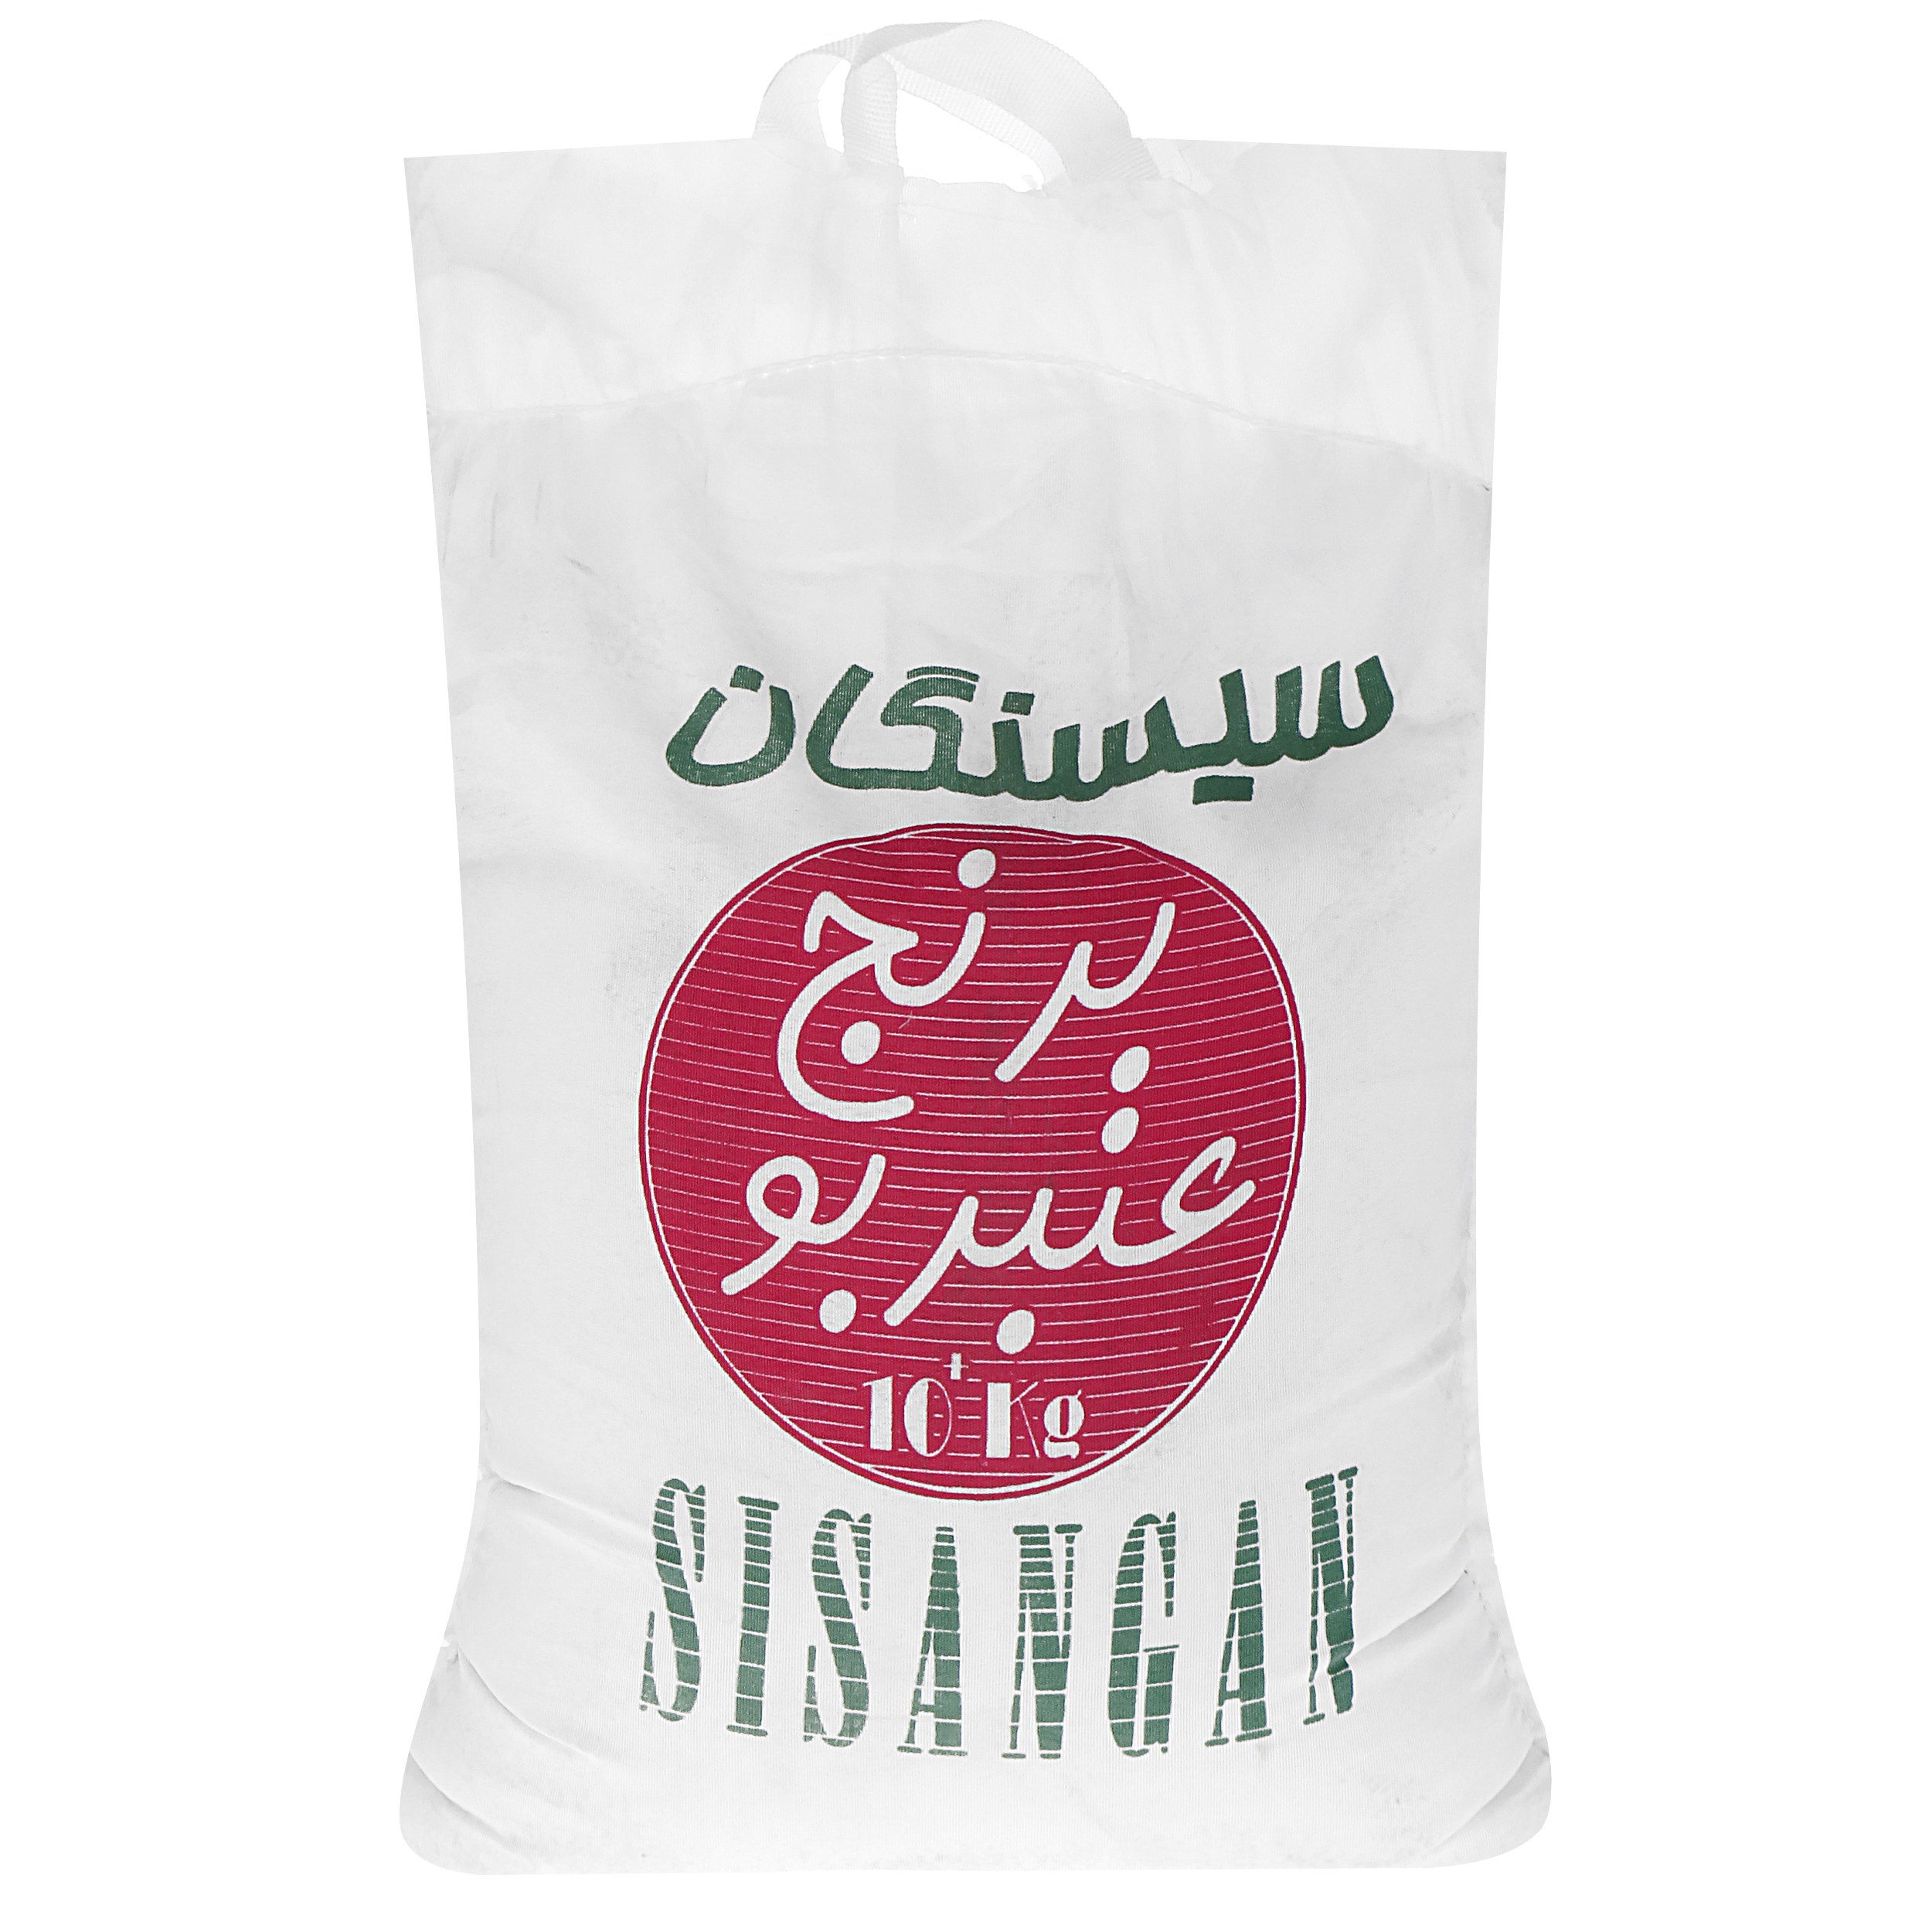 نکته خرید - قیمت روز برنج عنبربو اعیونی سیسنگان - 10 کیلوگرم خرید